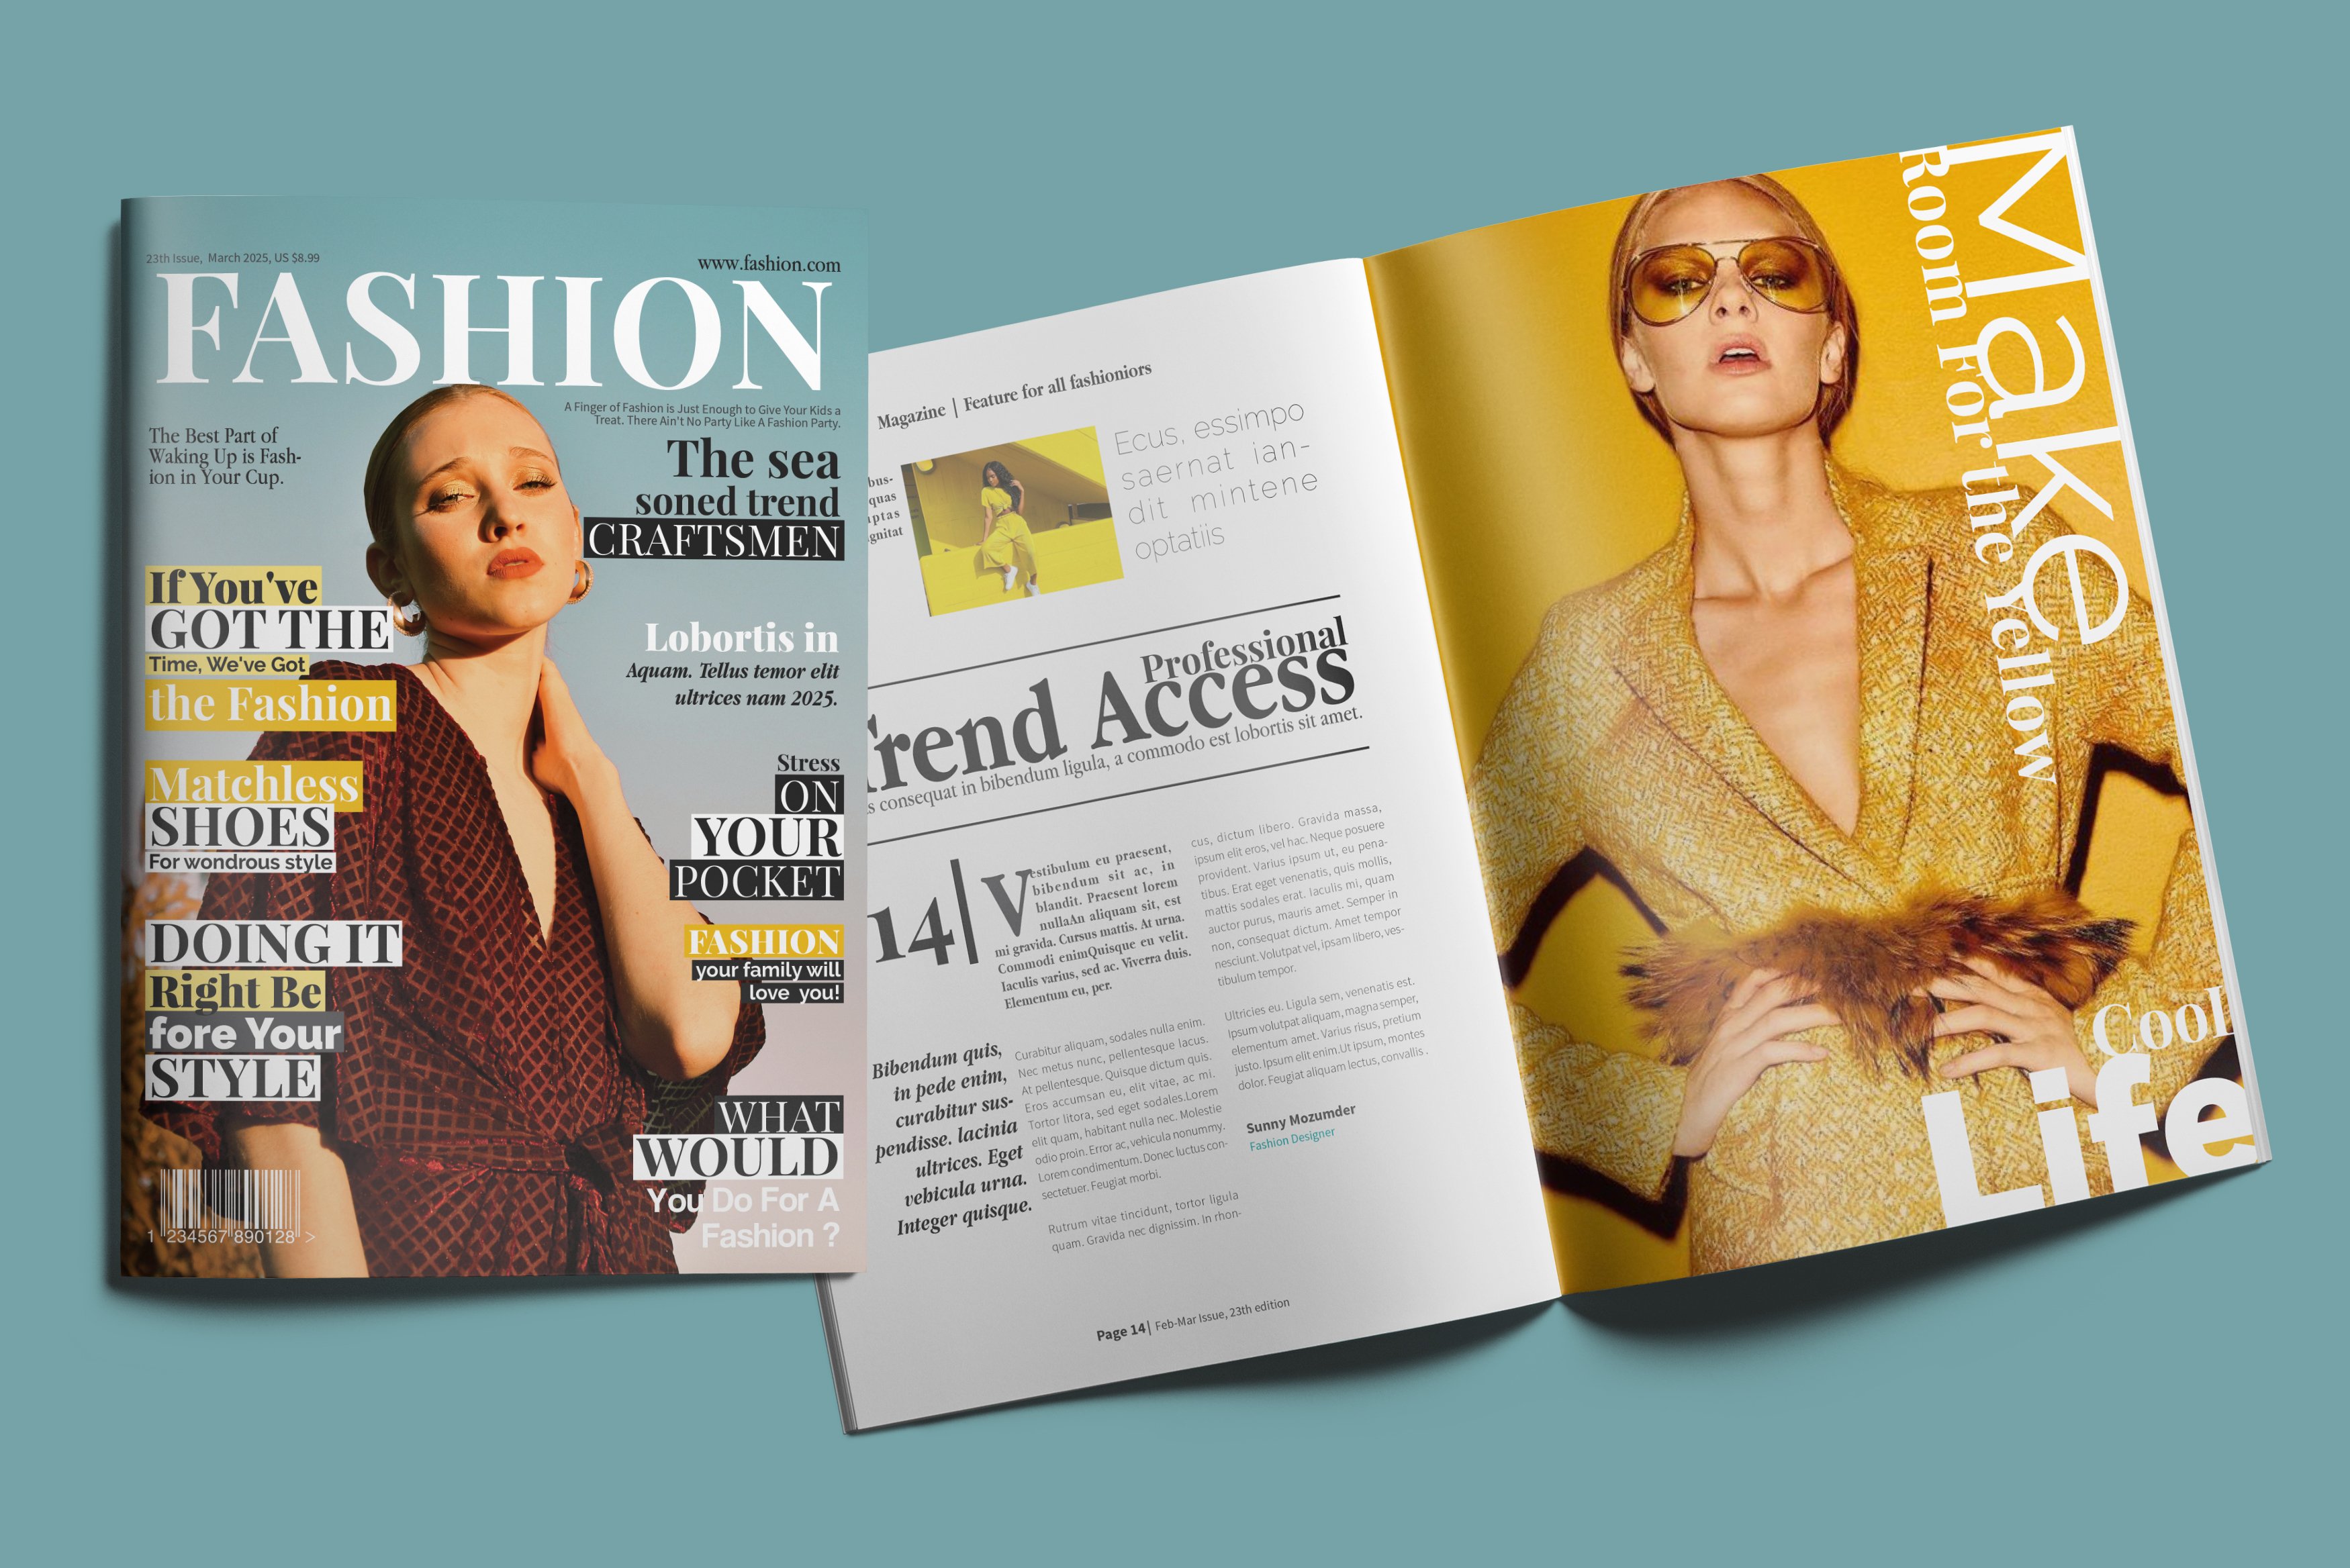 Fashion Magazine cover image.